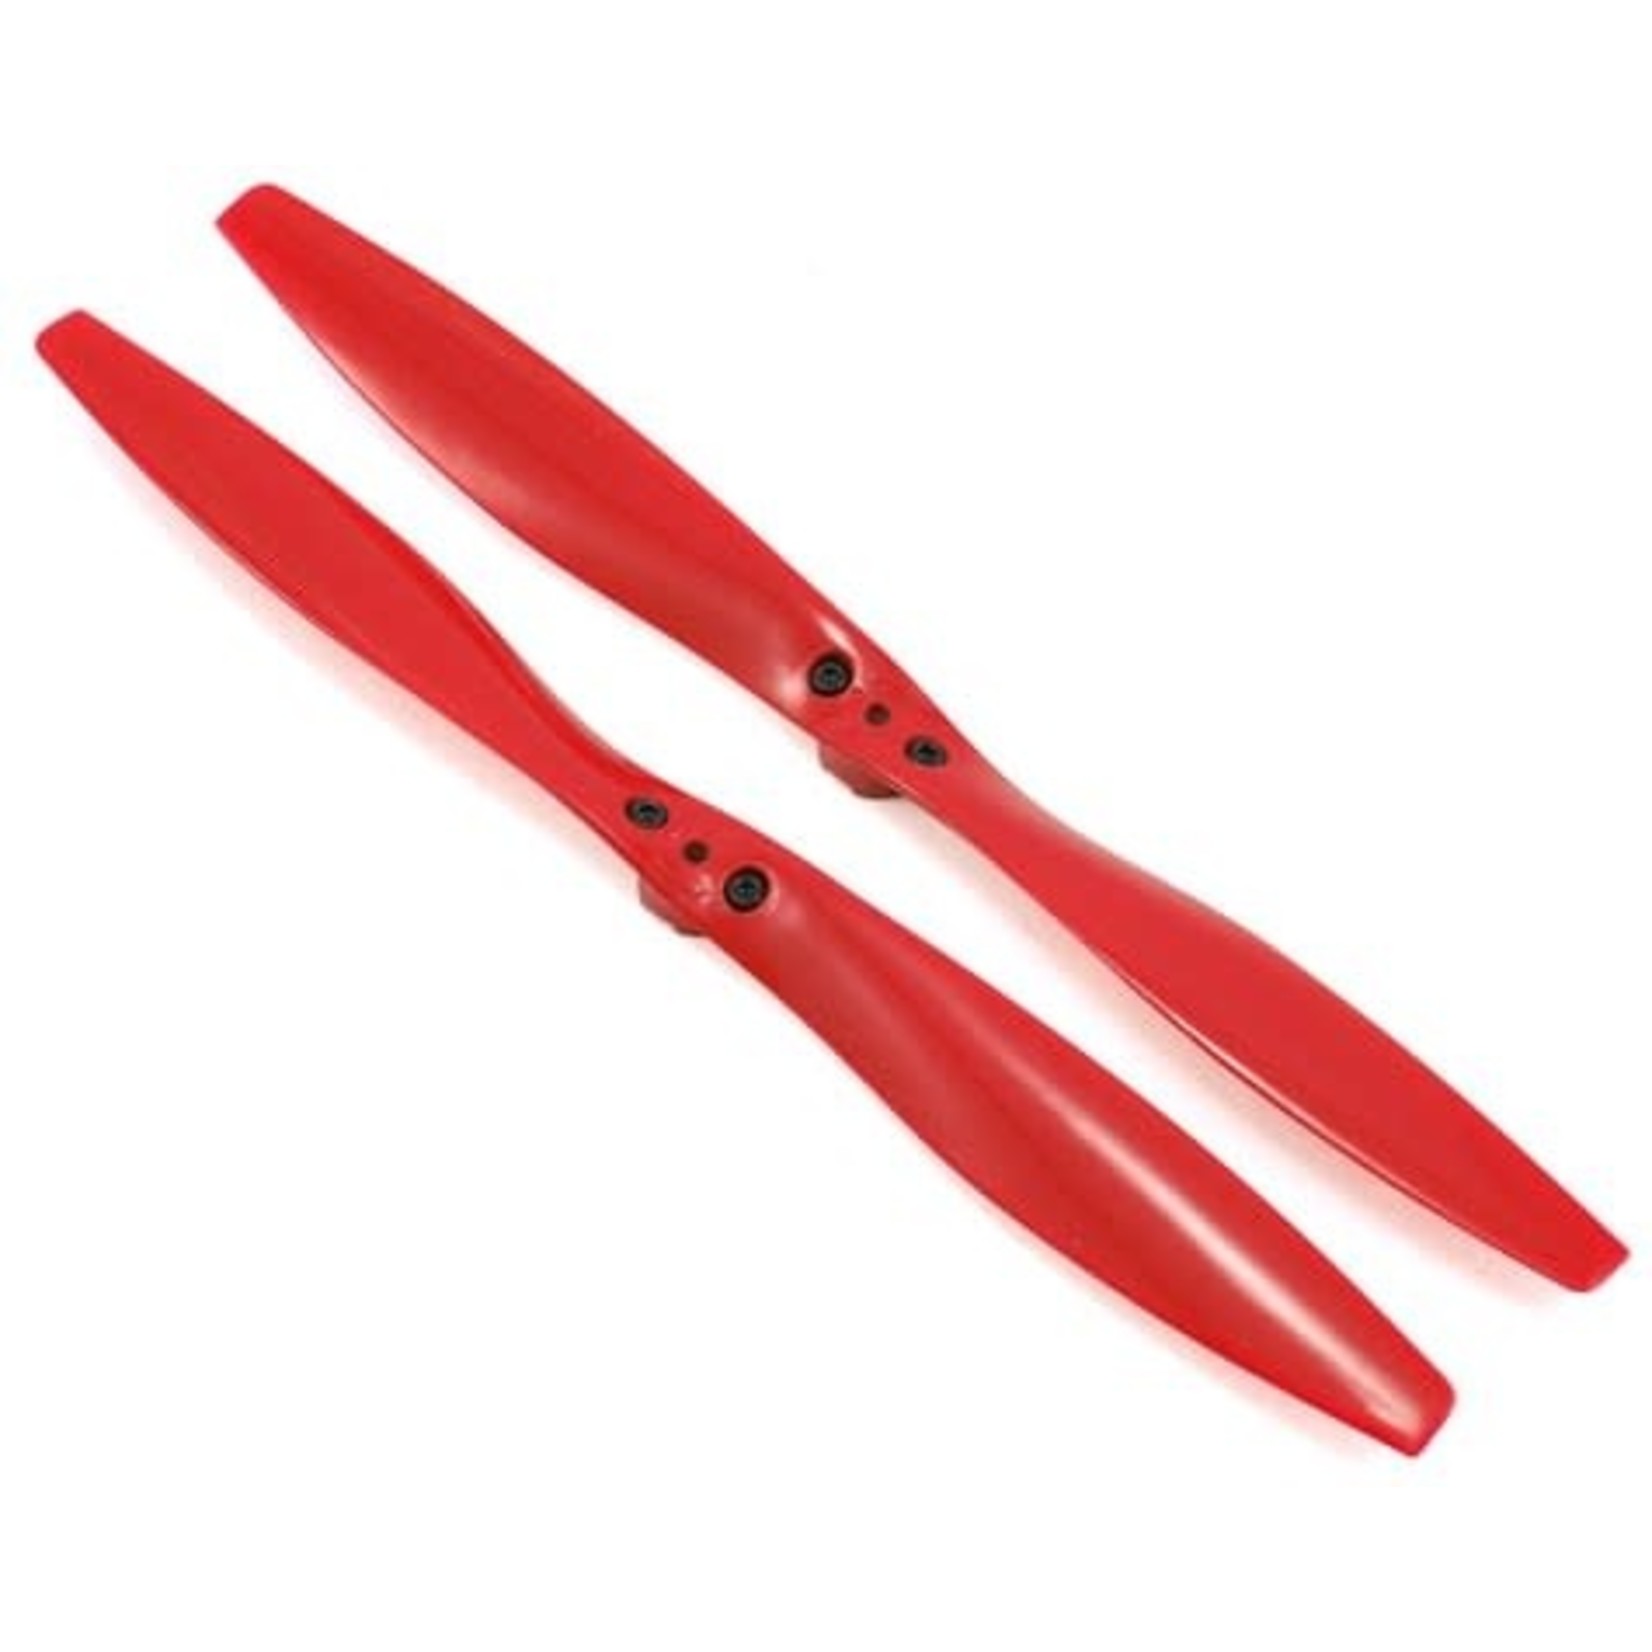 Traxxas Traxxas Aton Rotor Blade Set (Red) (2) #7928